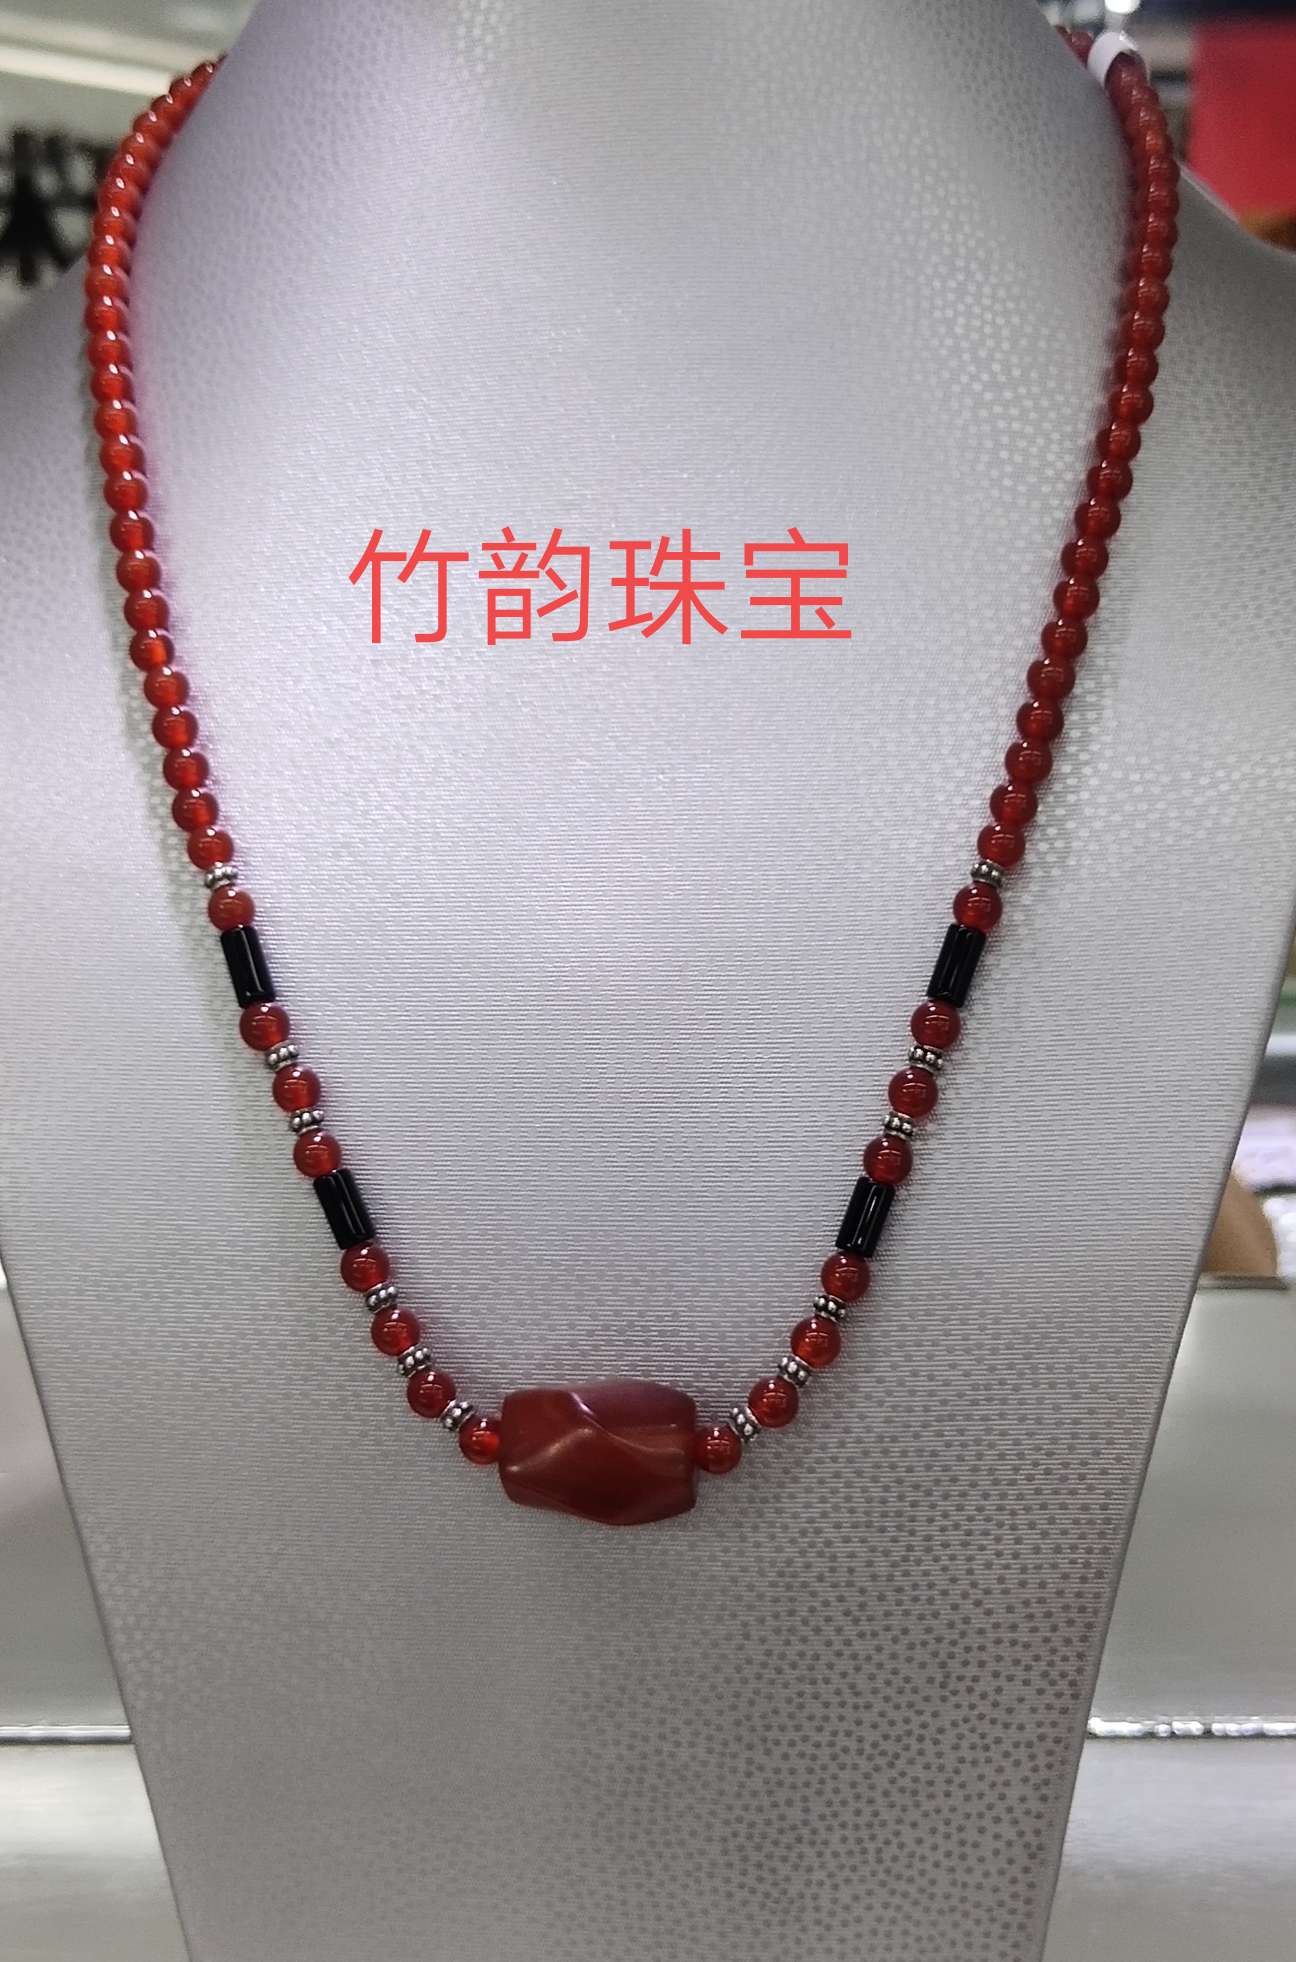 竹韵珠宝红色玛瑙女式百搭中长款项链送婆婆妈妈款产品图